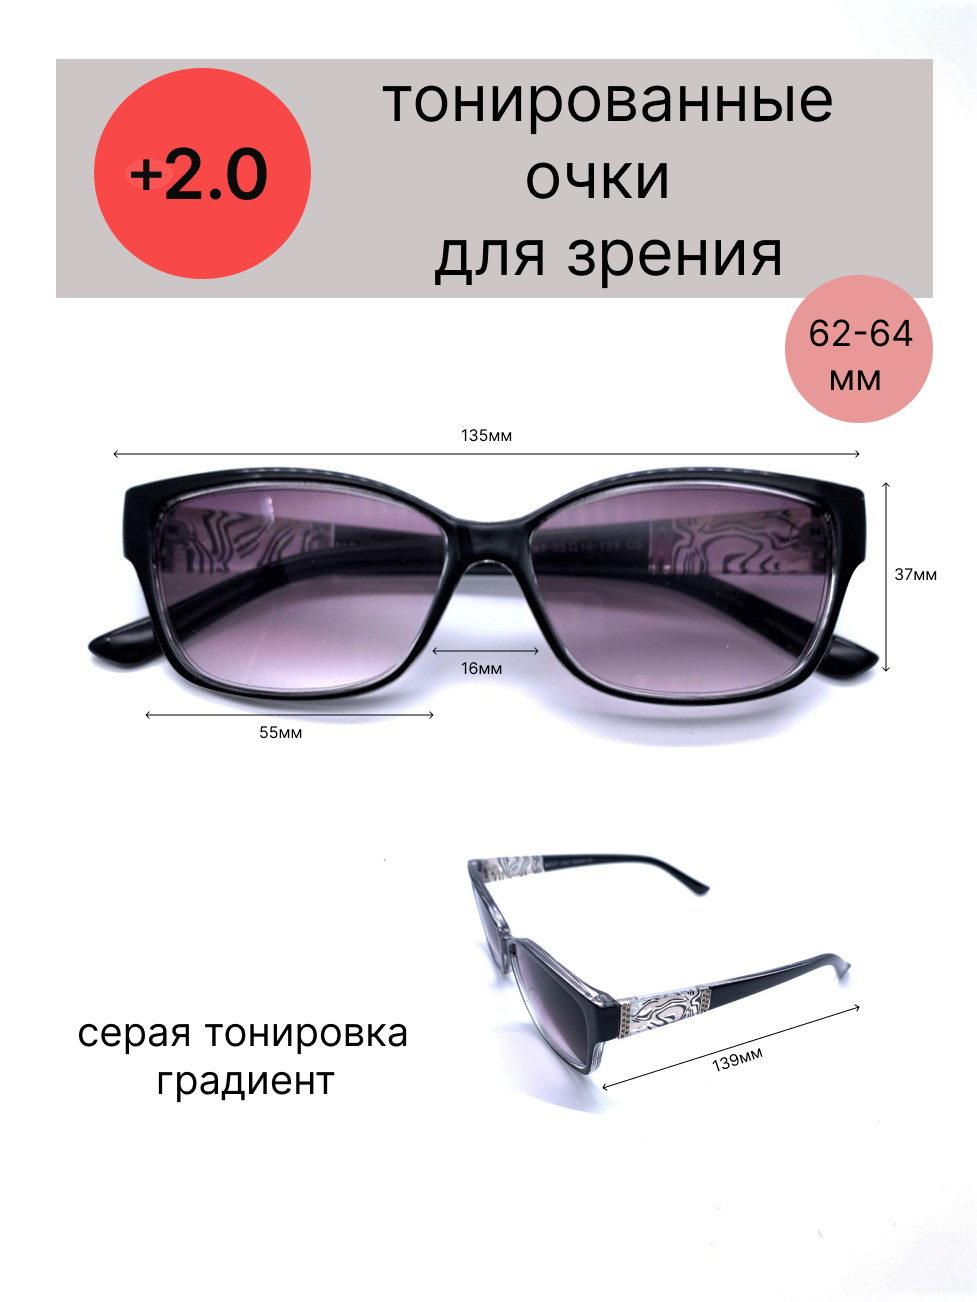 Тонированные очки с диоптриями +2.0